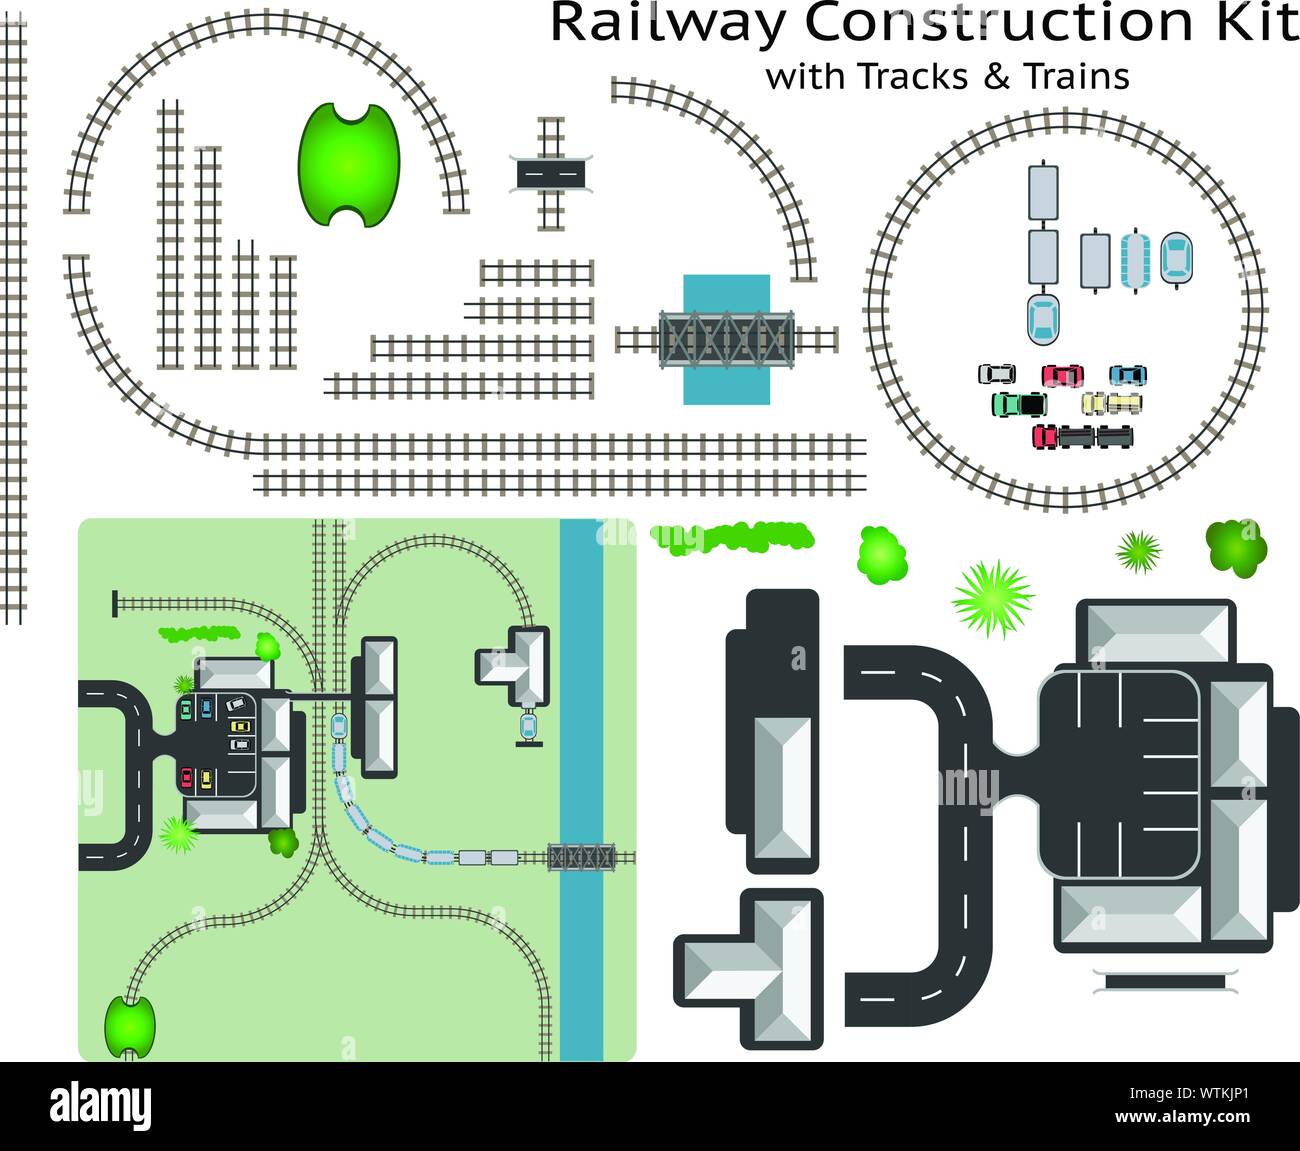 La gare ferroviaire et la construction de kit avec Train - construire votre propre chemin de fer, regroupées et couches, voir mon portefeuille pour d'autres kits Illustration de Vecteur